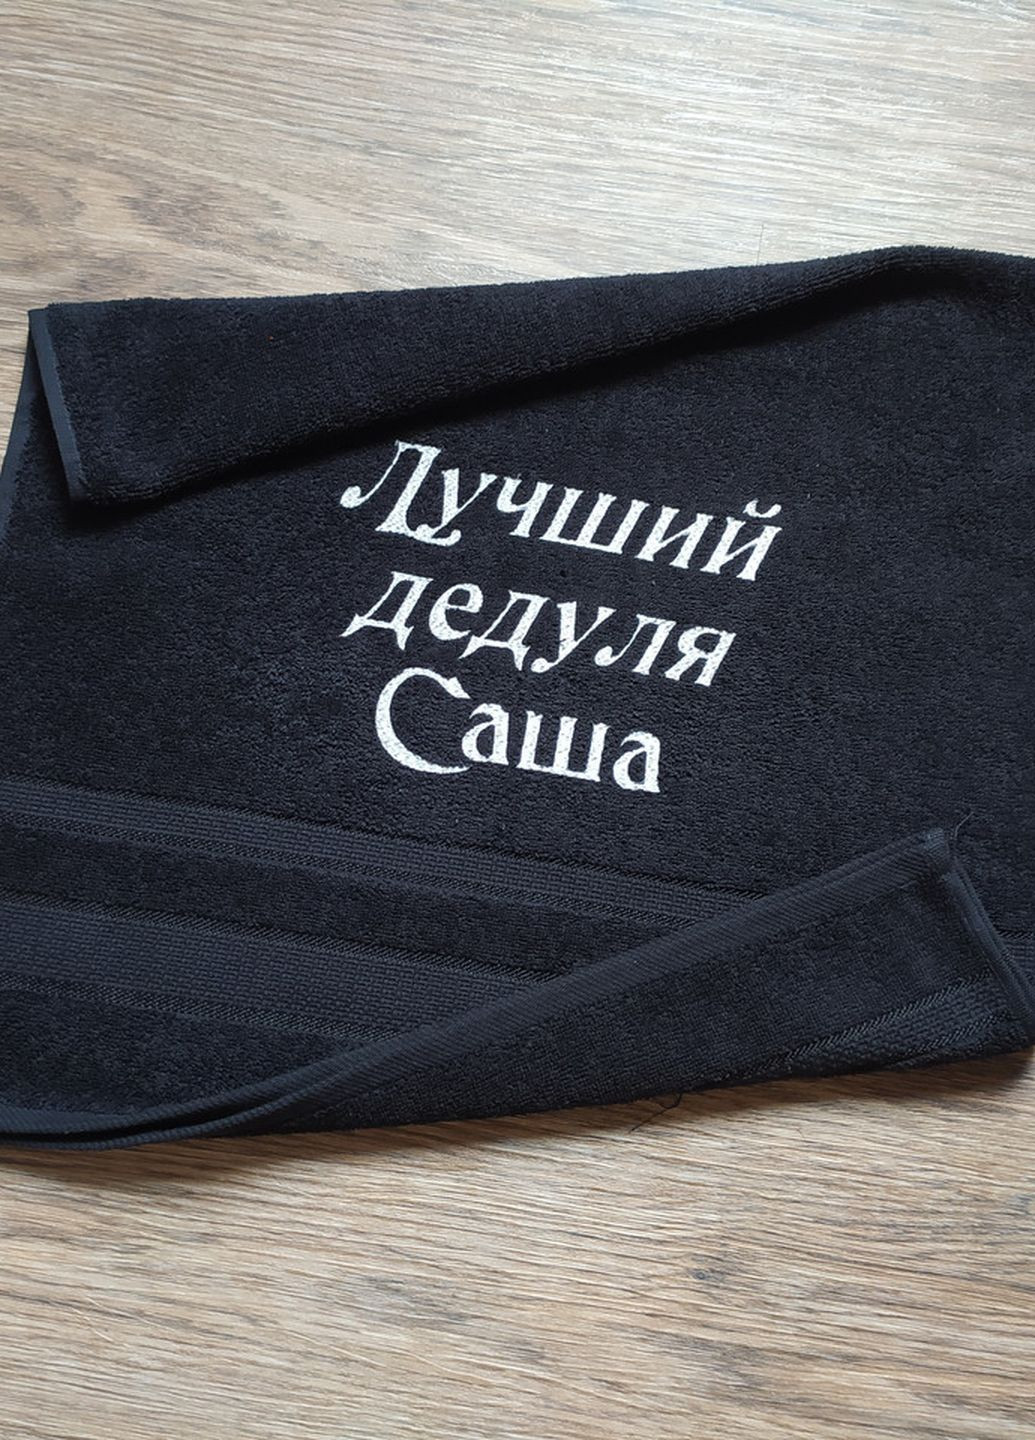 No Brand полотенце с именной вышивкой махровое лицевое 50*90 черный дедушке саша 00268 однотонный черный производство - Украина